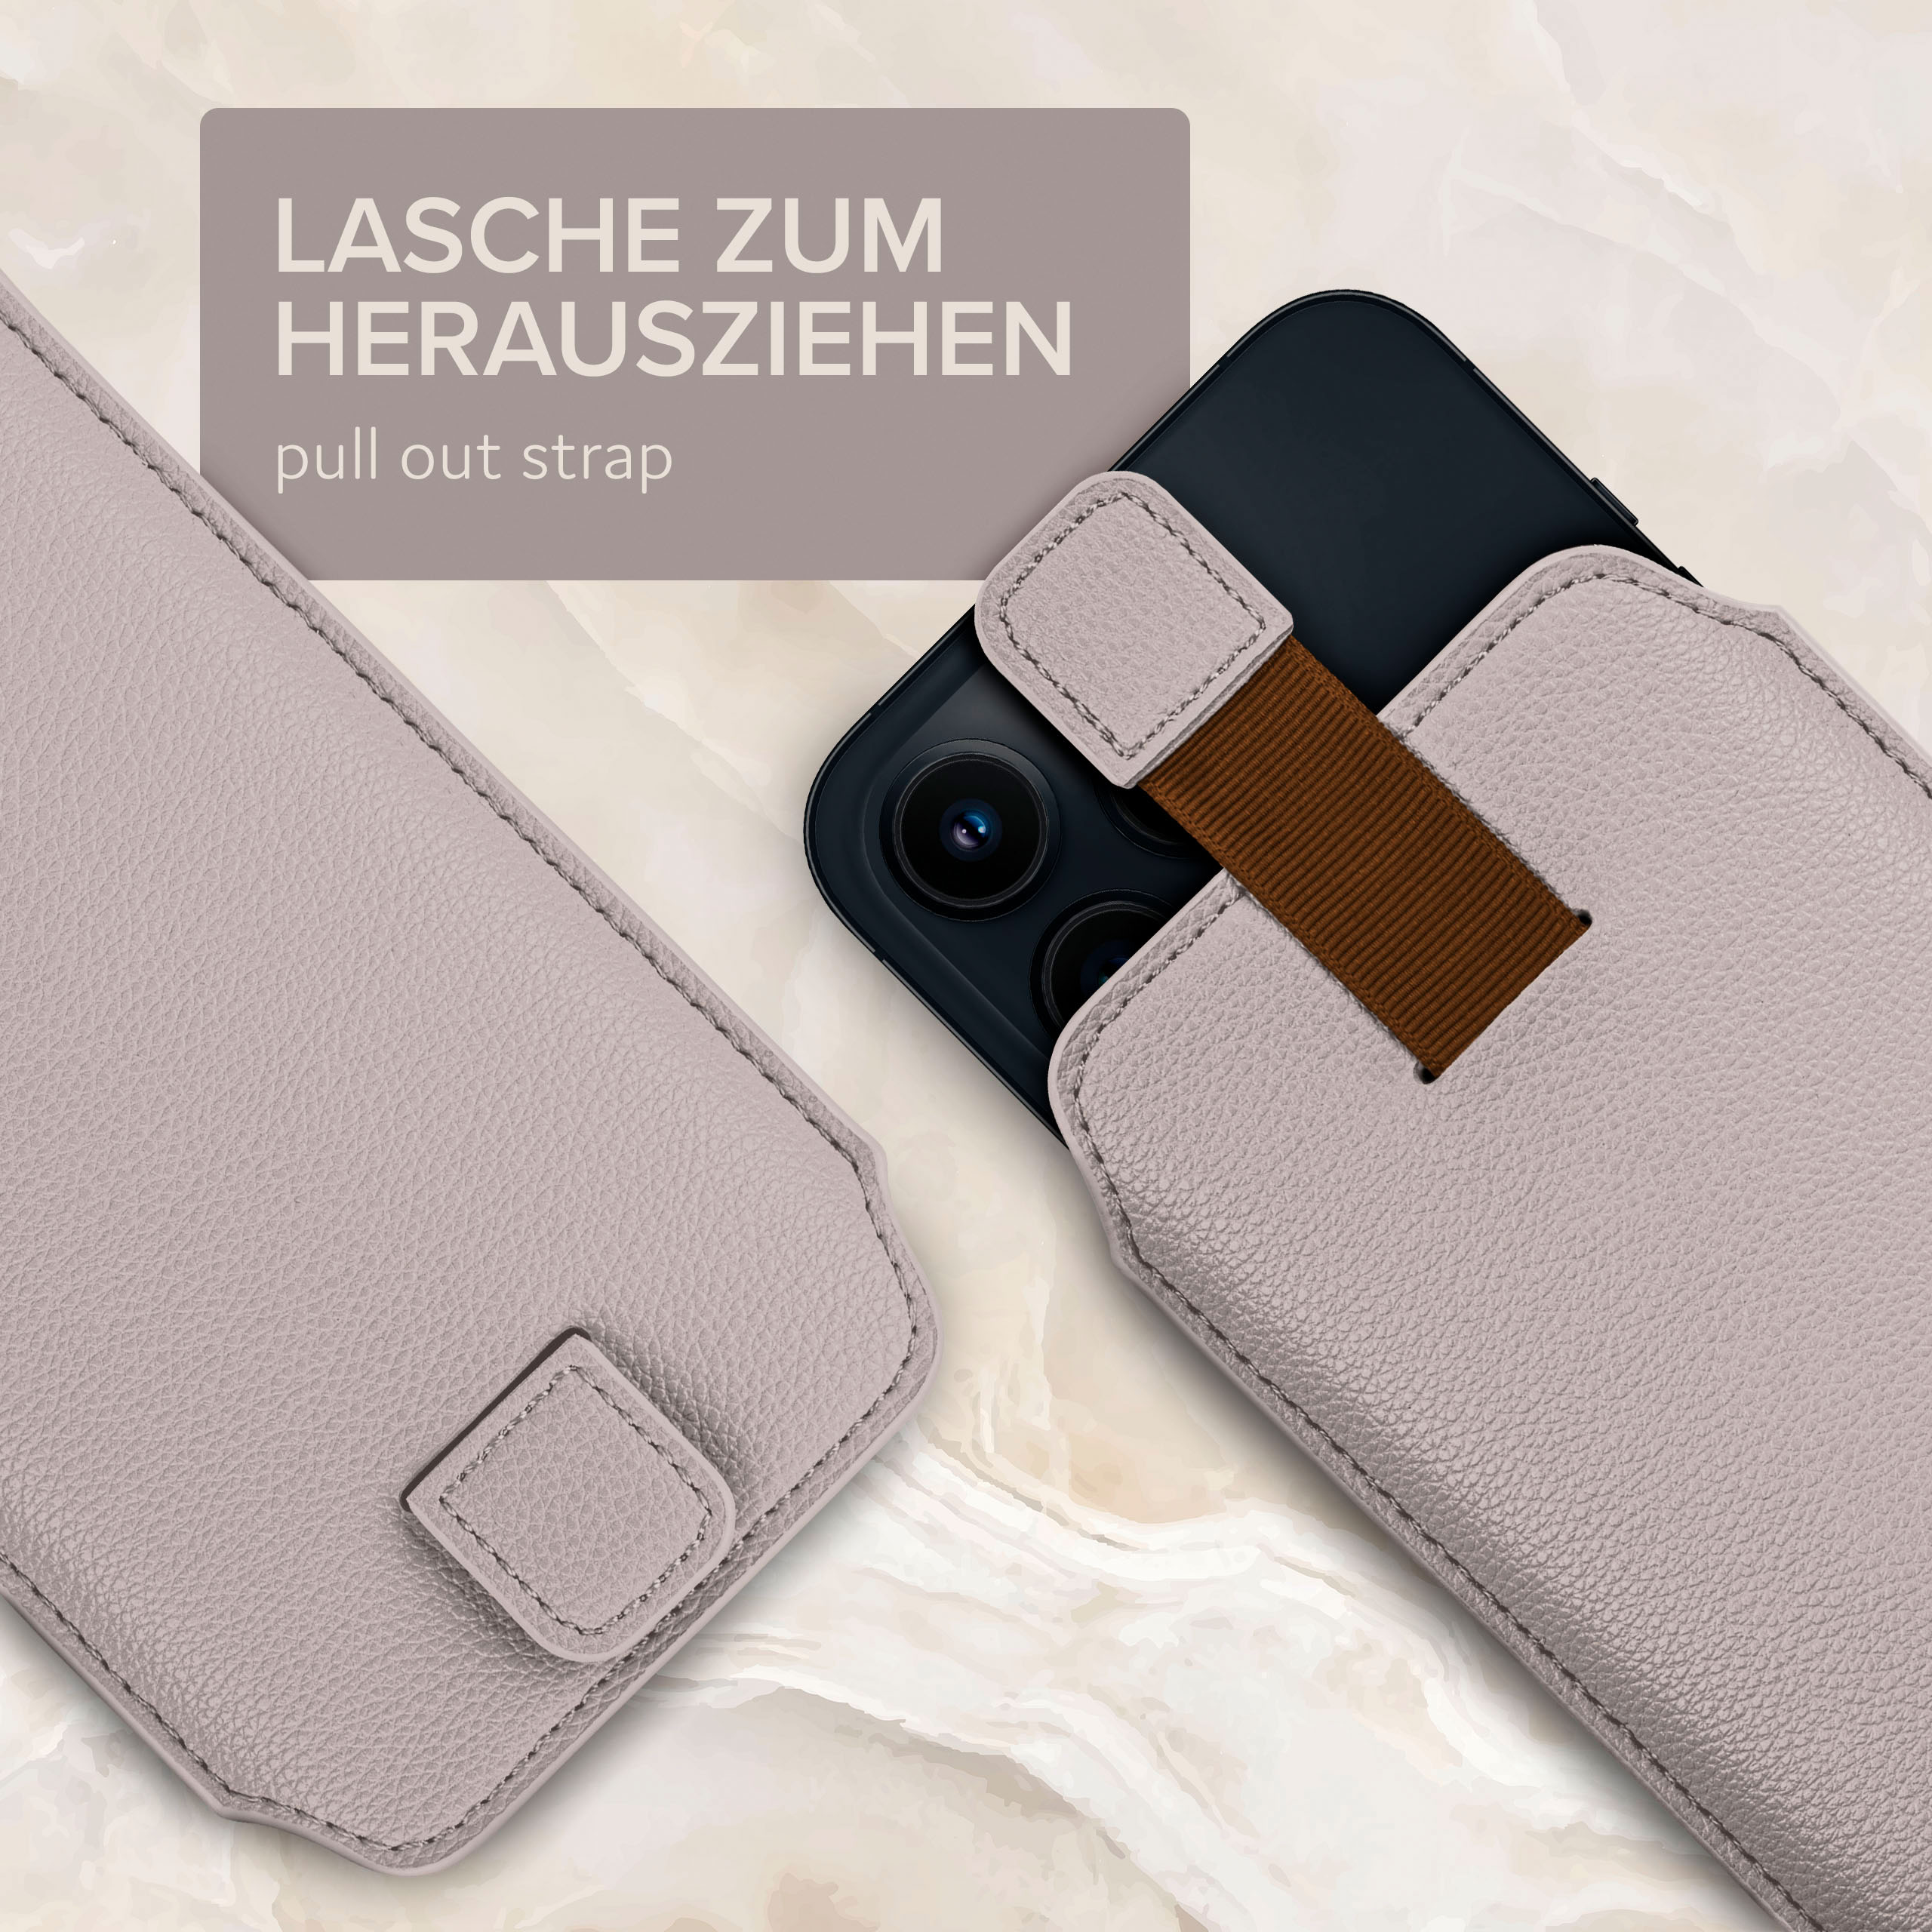 ONEFLOW Einsteckhülle Cover, mit Zuglasche, Samsung, Full Galaxy S8 Plus, Hellgrau